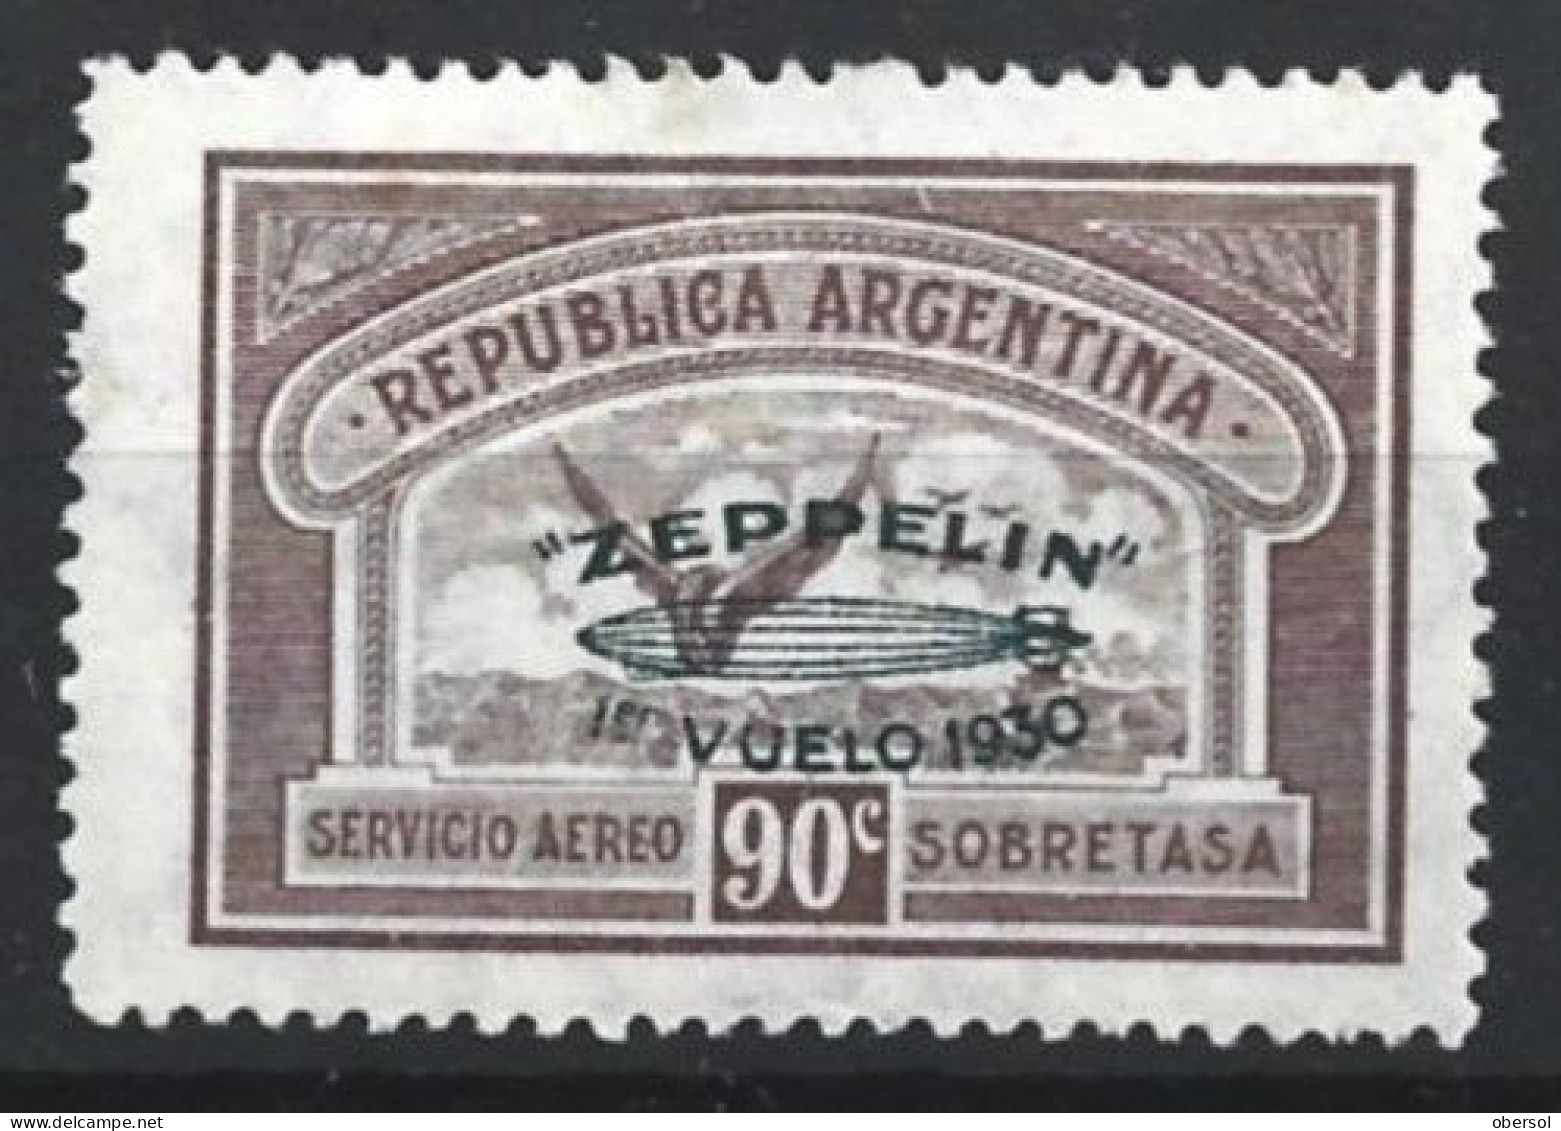 Argentina 1930 Zeppelin Green Overprint 90c MH Stamp (2) - Unused Stamps